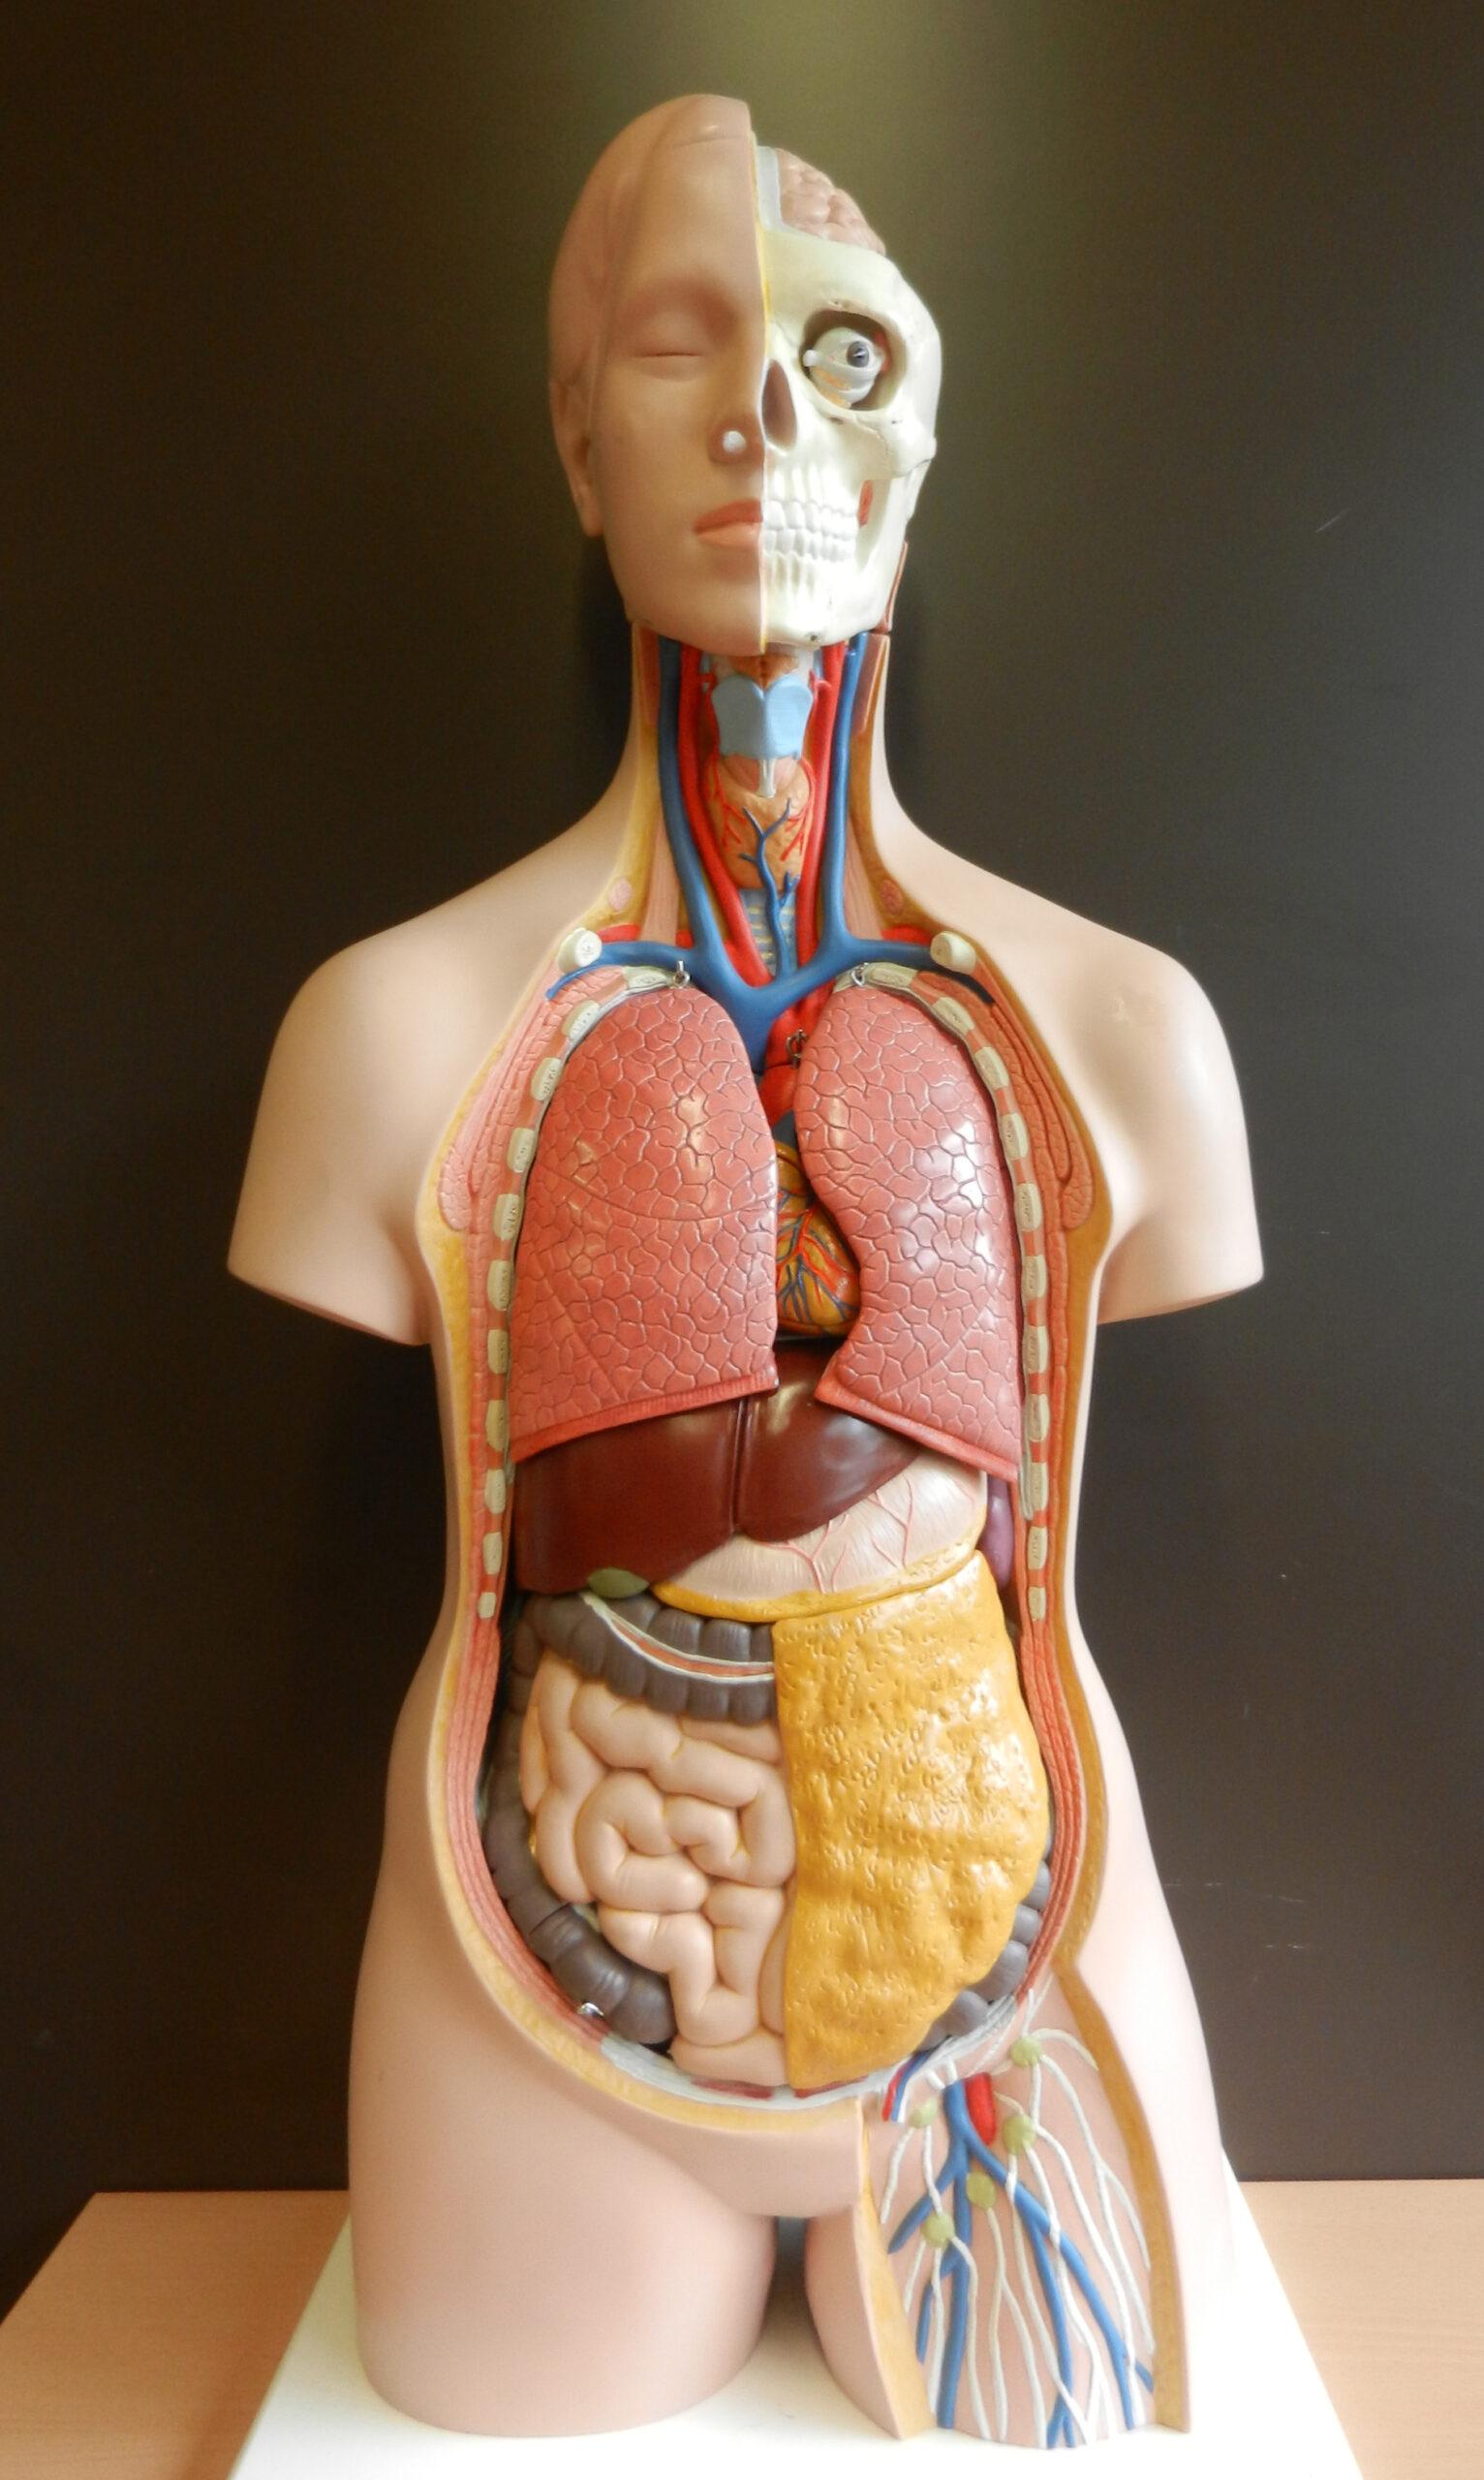 Organe im Körper: Eine Übersicht der lebenswichtigen Funktionen